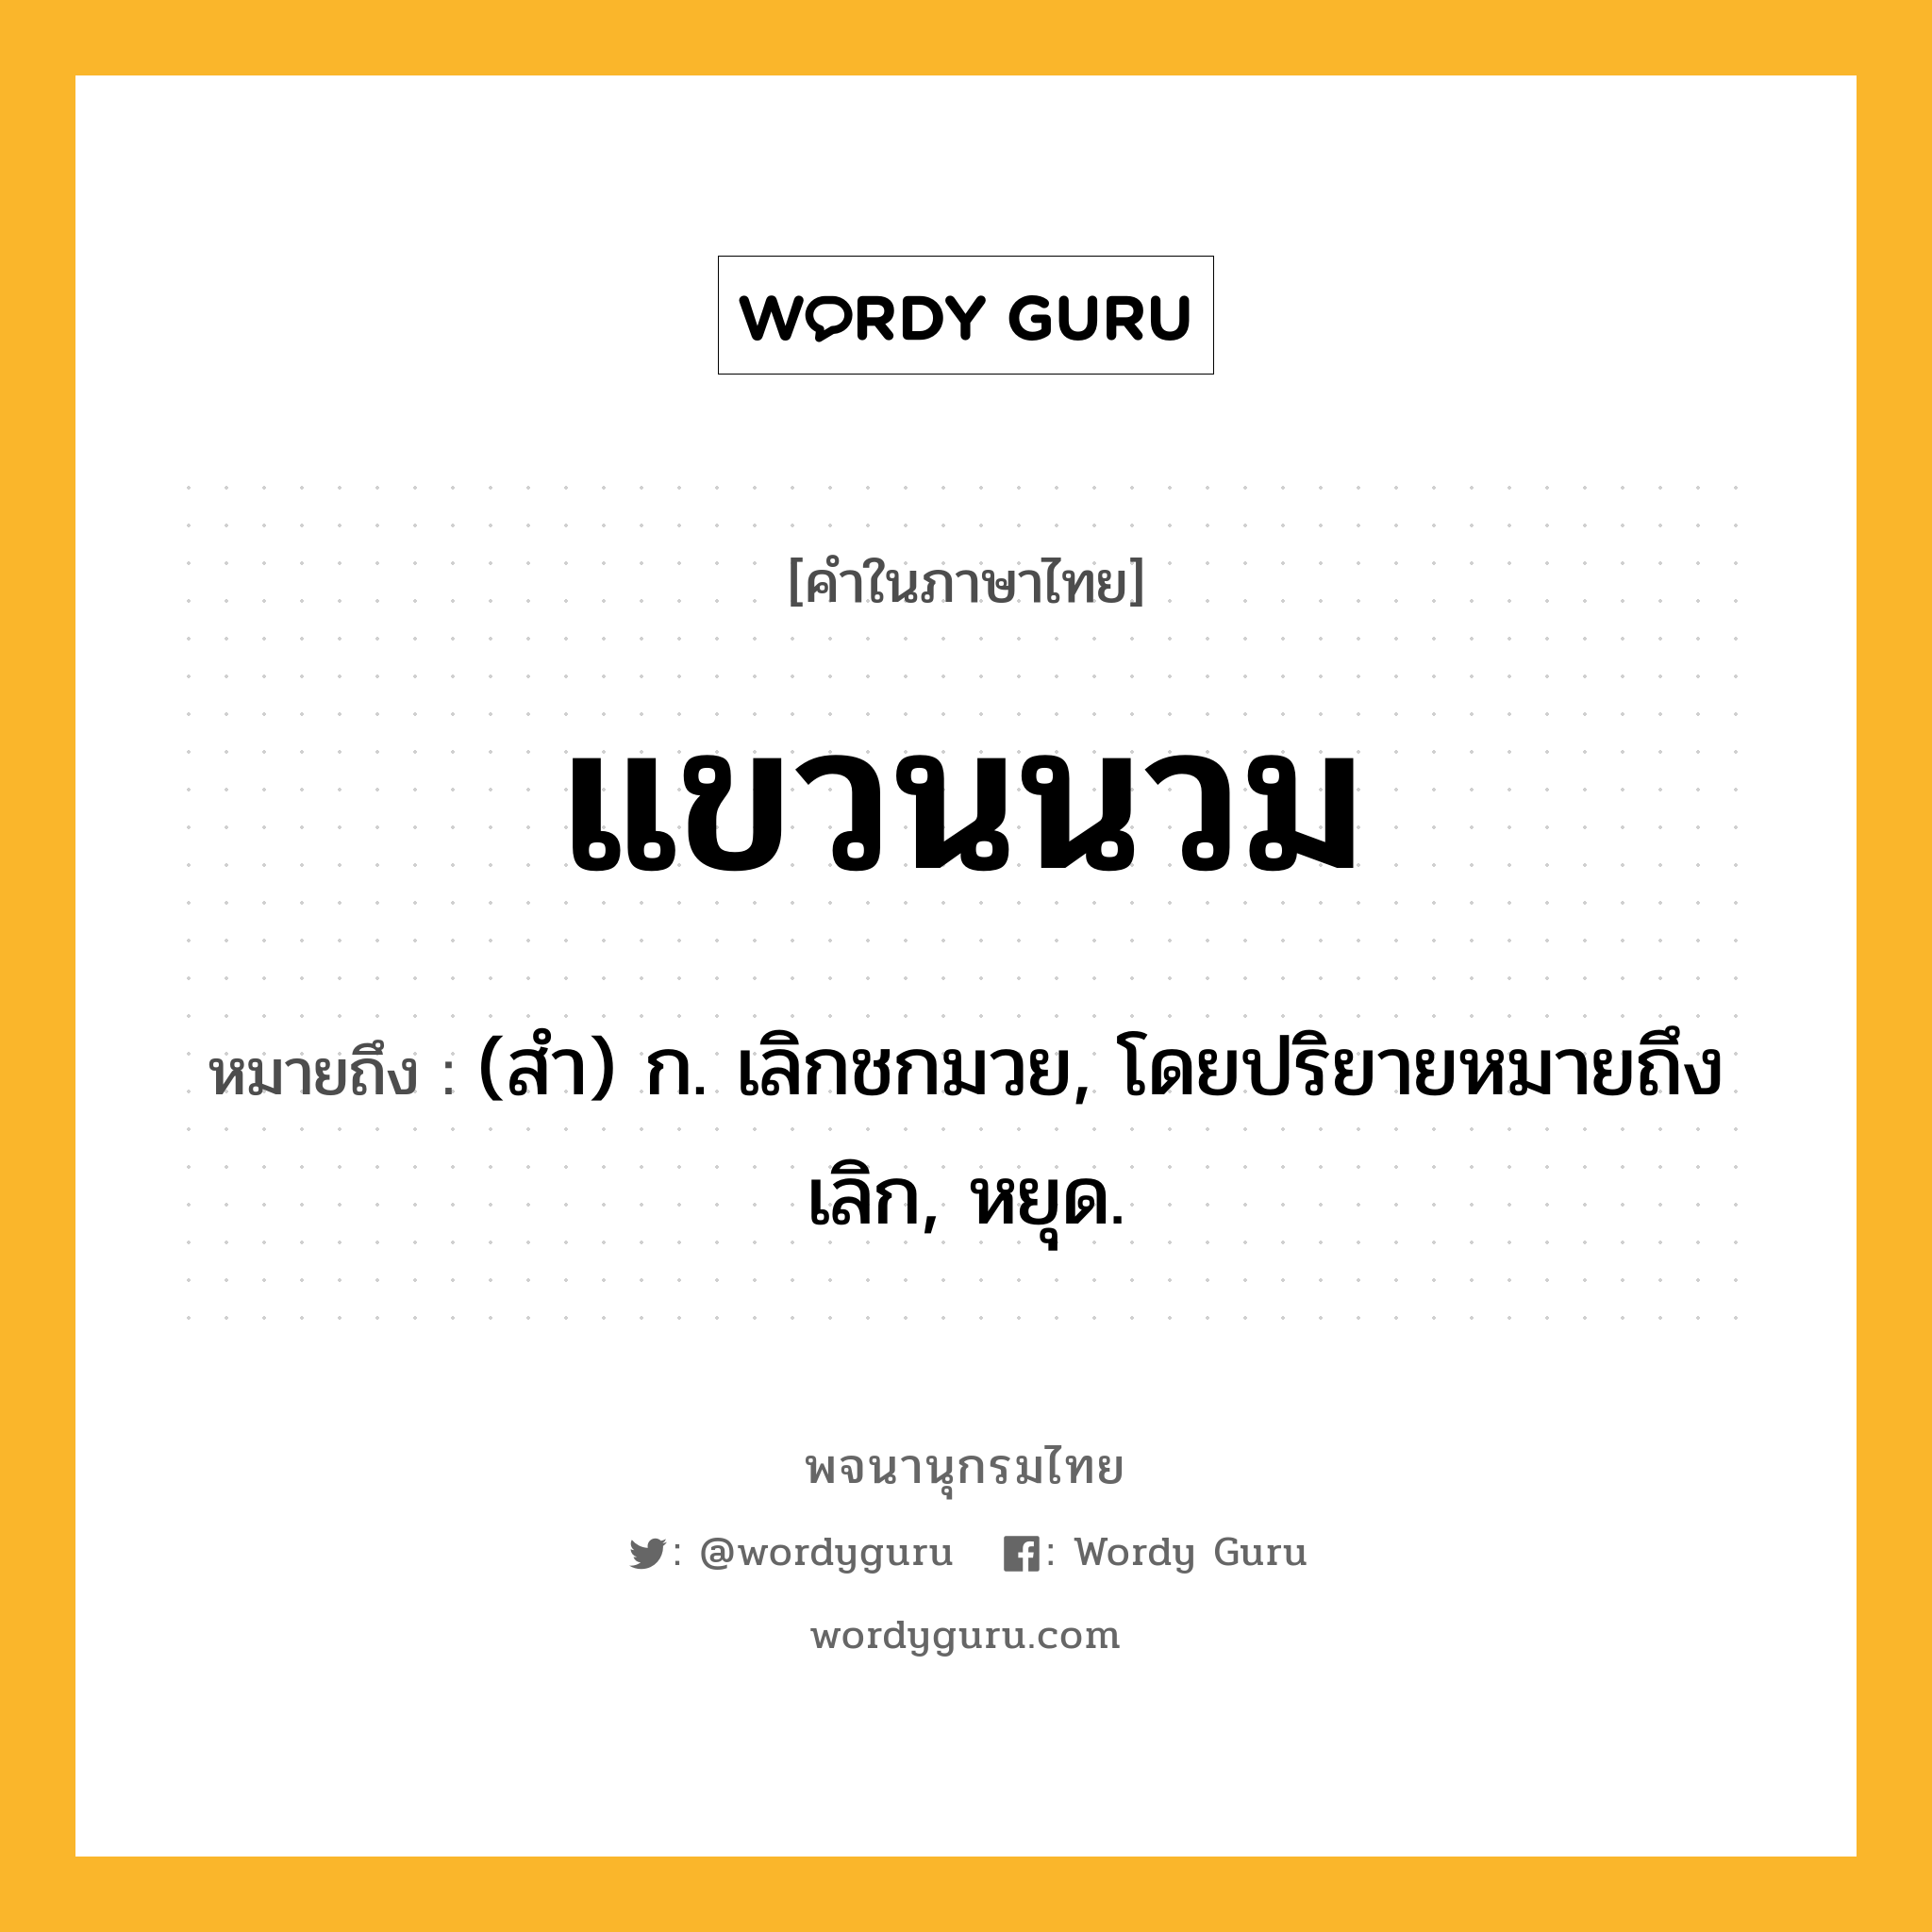 แขวนนวม ความหมาย หมายถึงอะไร?, คำในภาษาไทย แขวนนวม หมายถึง (สำ) ก. เลิกชกมวย, โดยปริยายหมายถึง เลิก, หยุด.